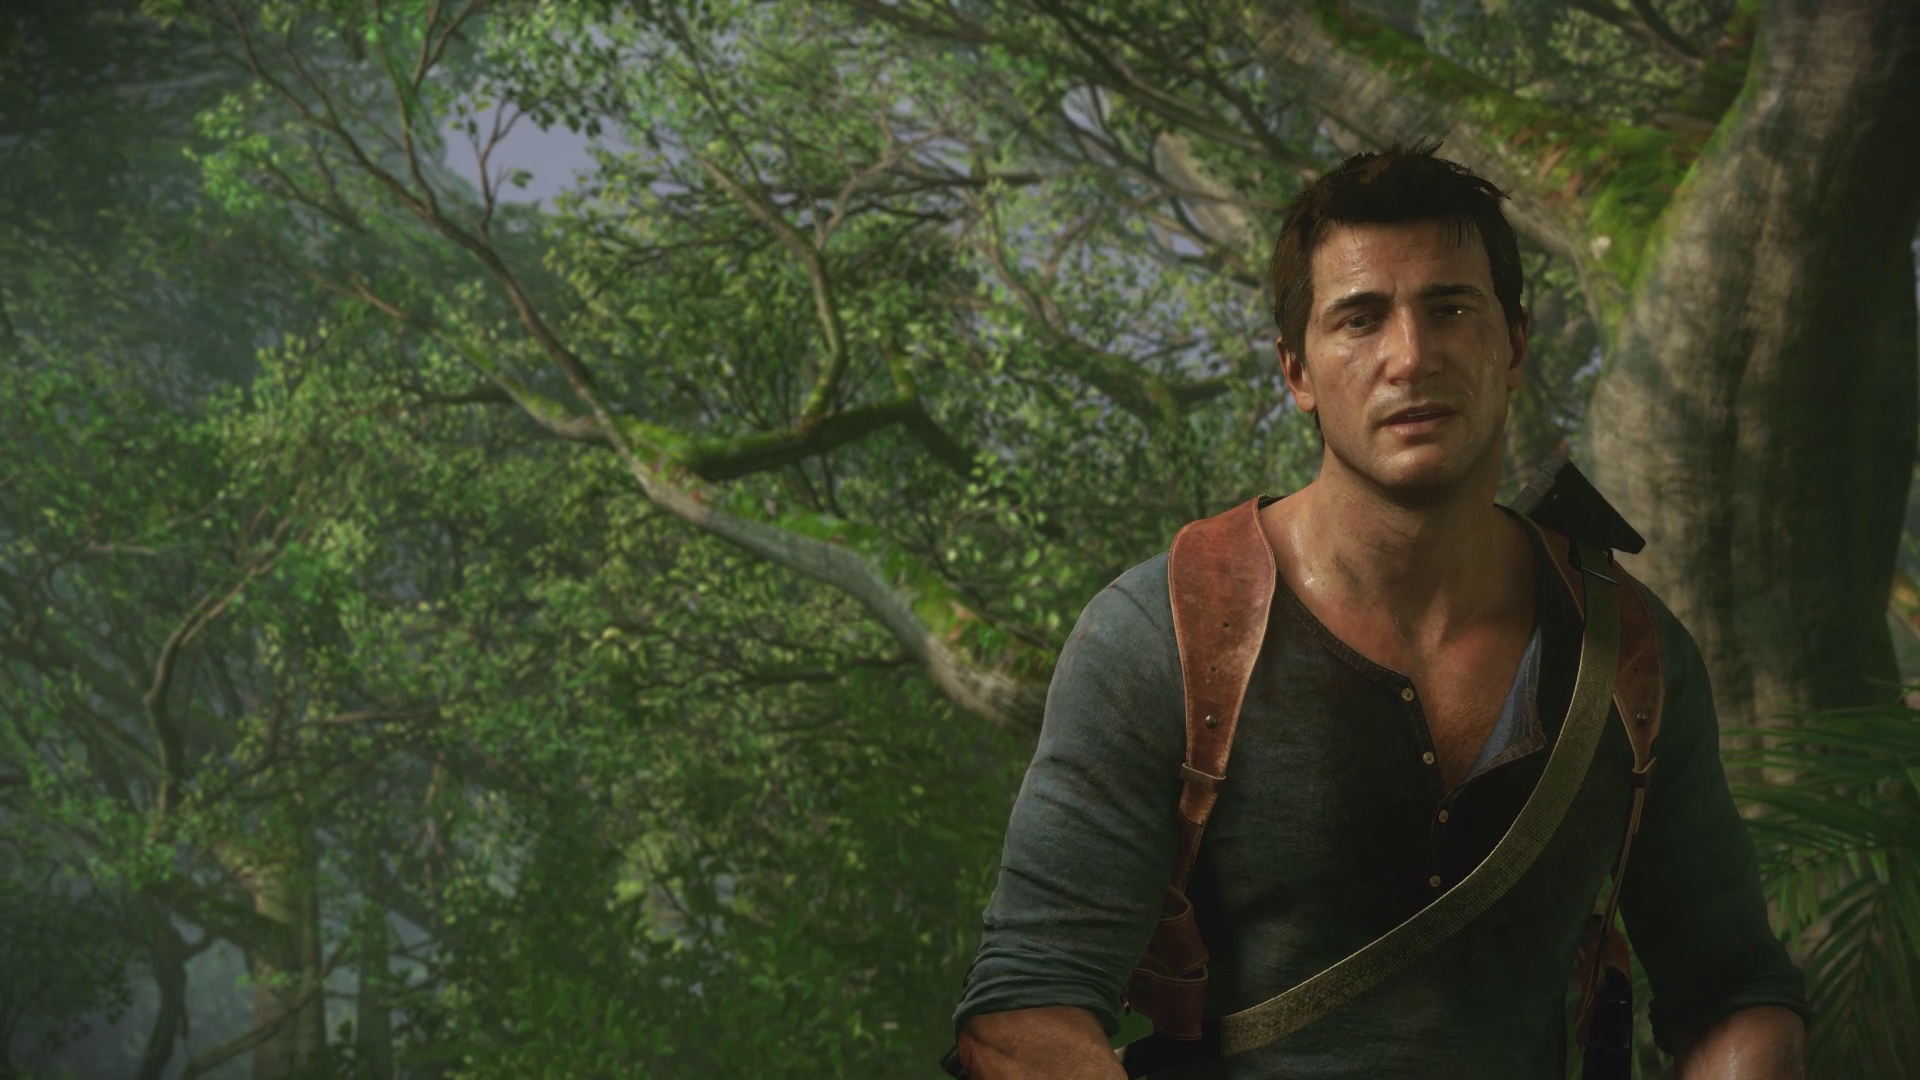 سونی: Uncharted 4: A Thief's End تا قبل از پایان سال مالی 2015 عرضه خواهد شد 1